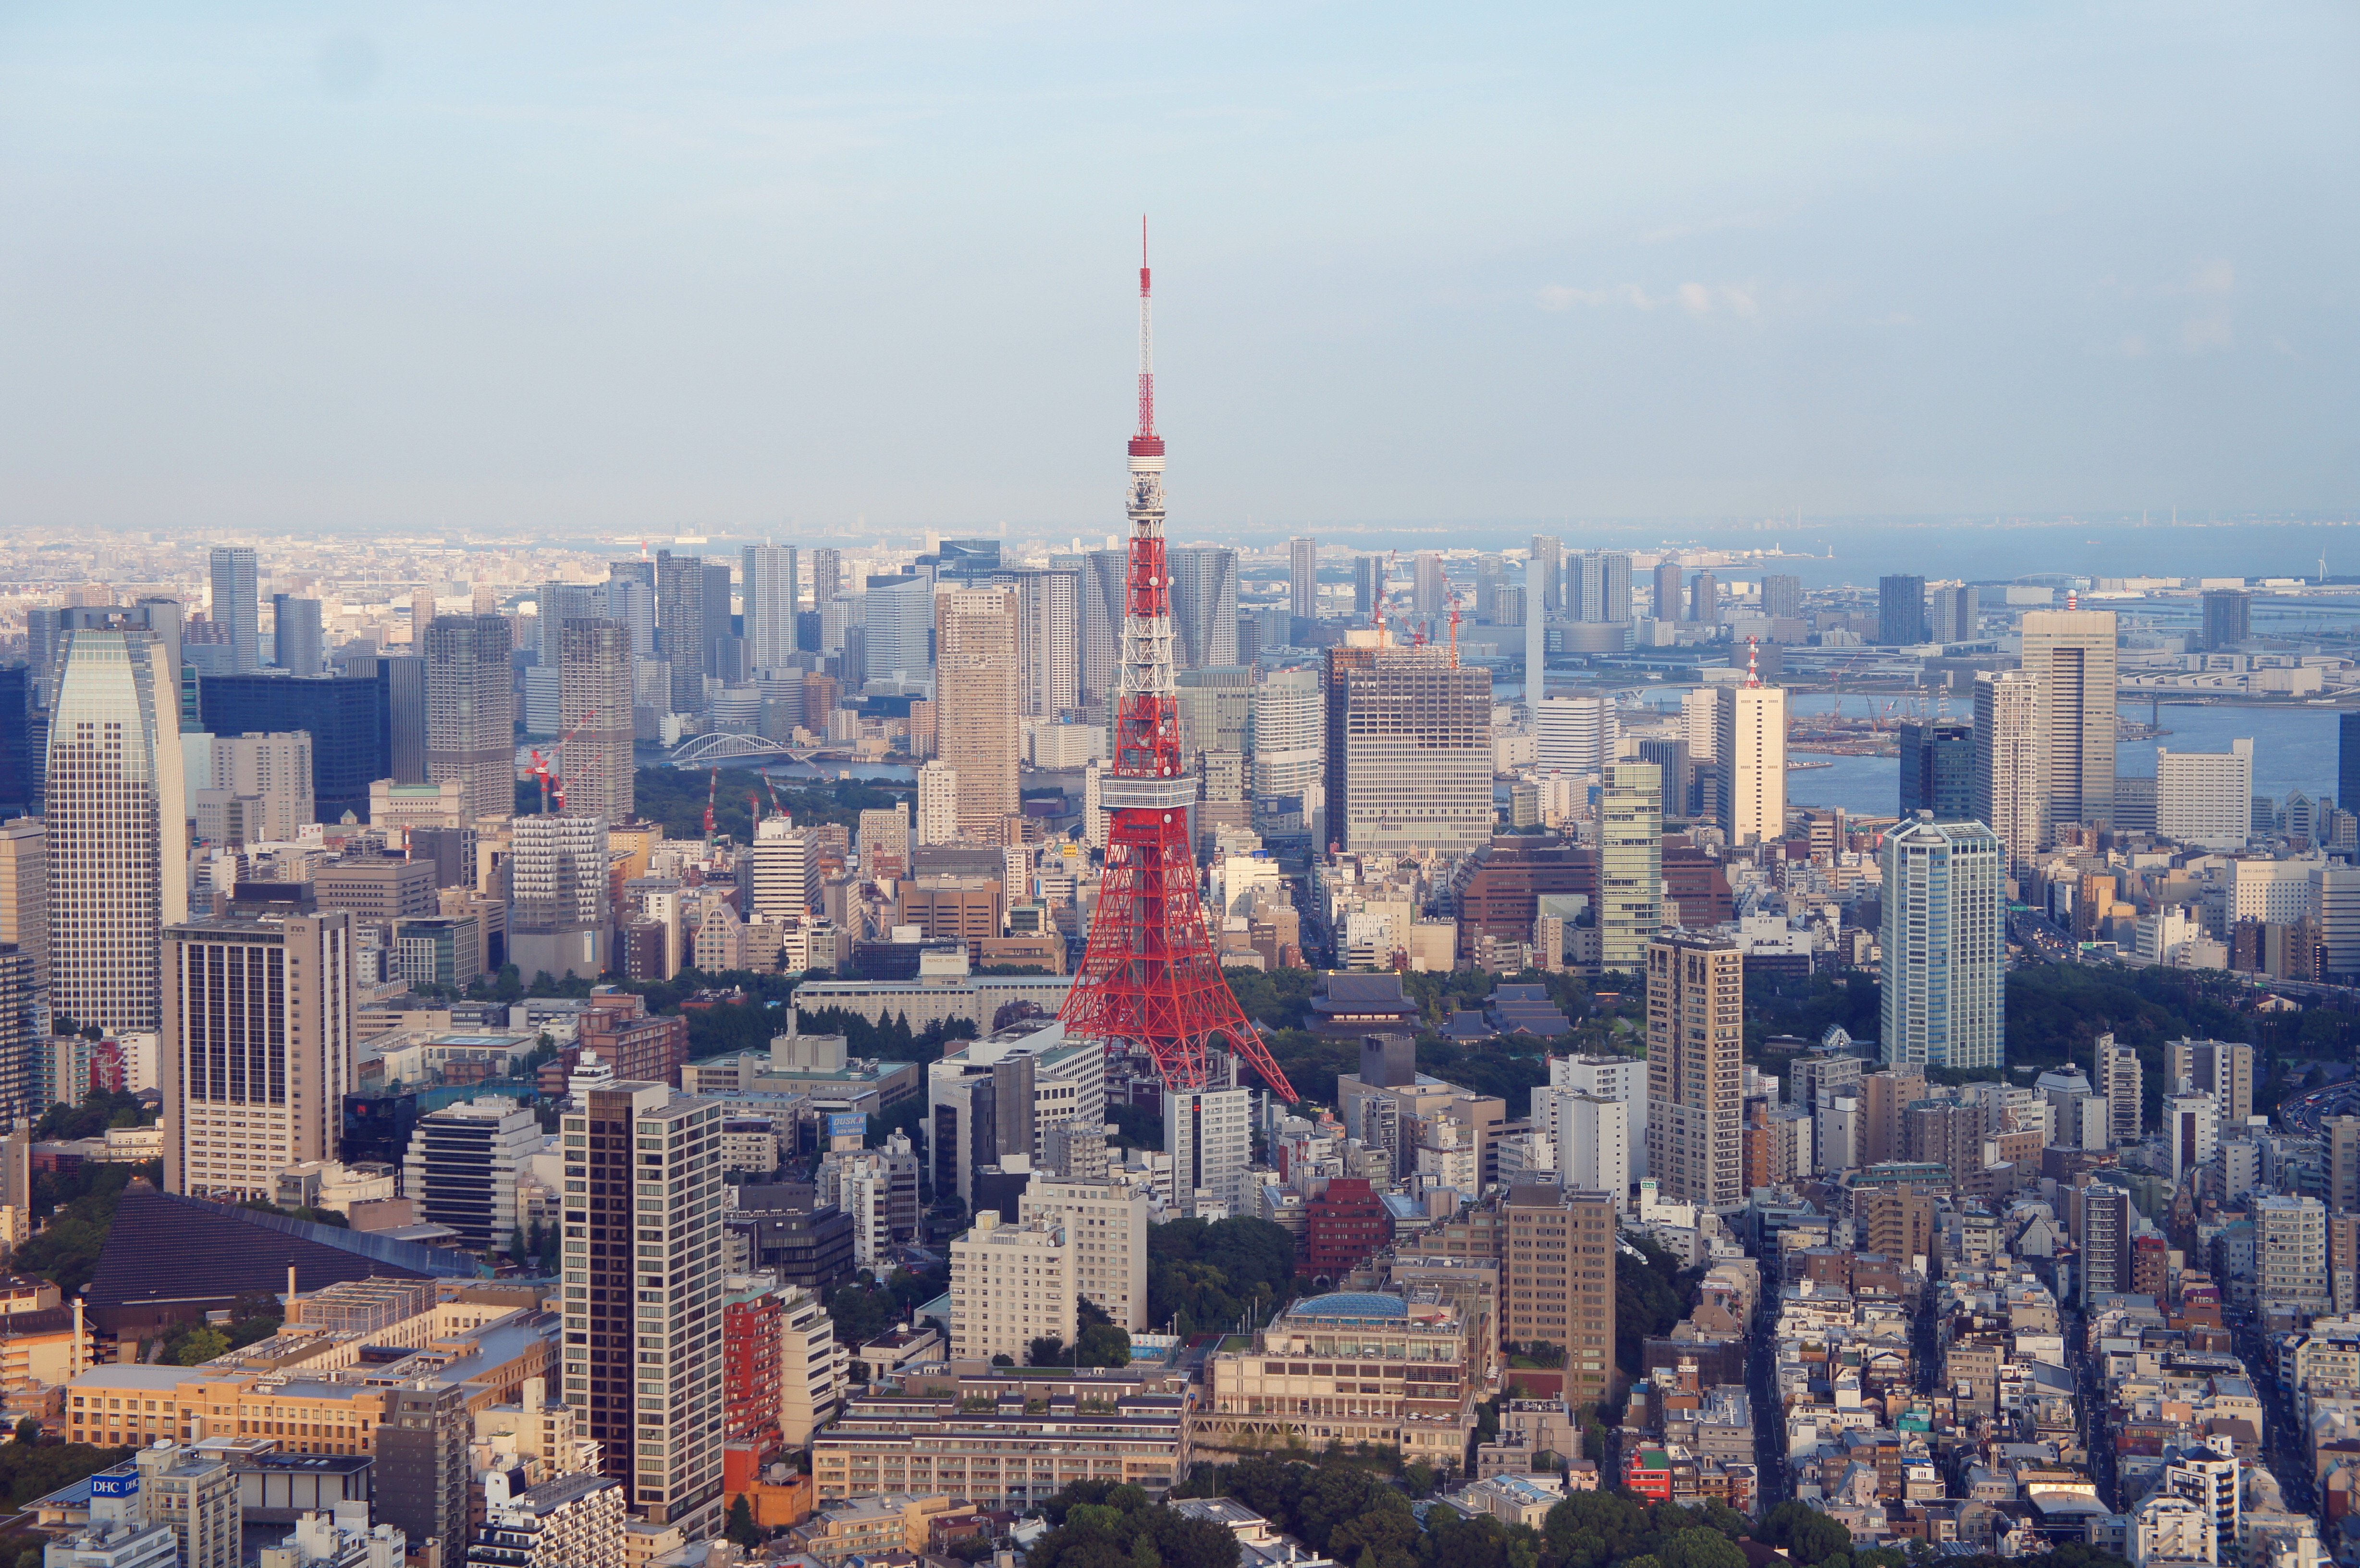 东京标志性建筑之一
以巴黎埃菲尔铁塔为范本而建造
从